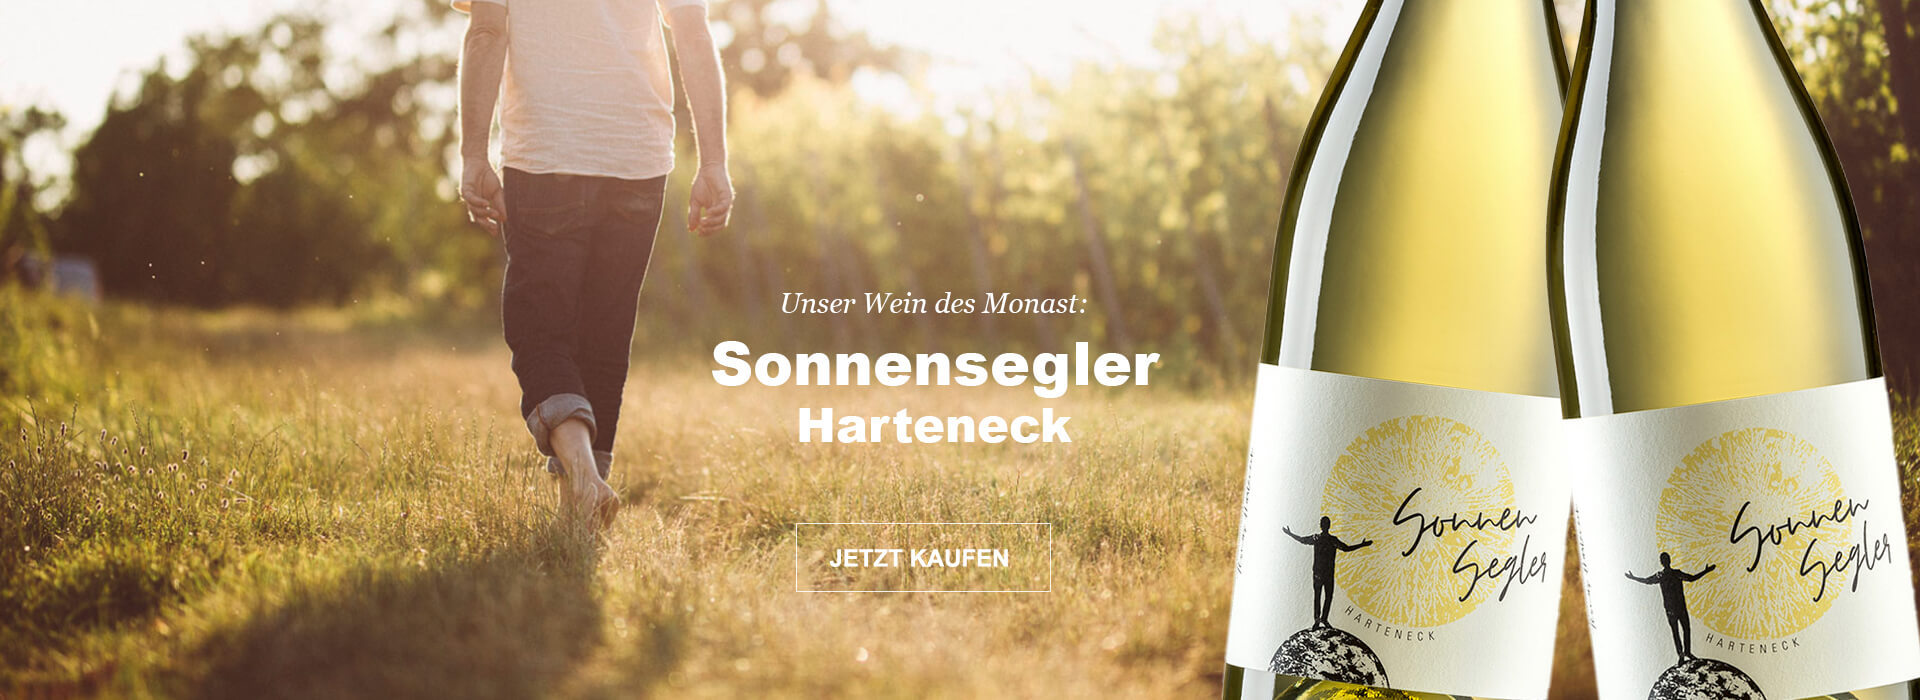 Unser Wein des Monats August: Sonnensegler Harteneck